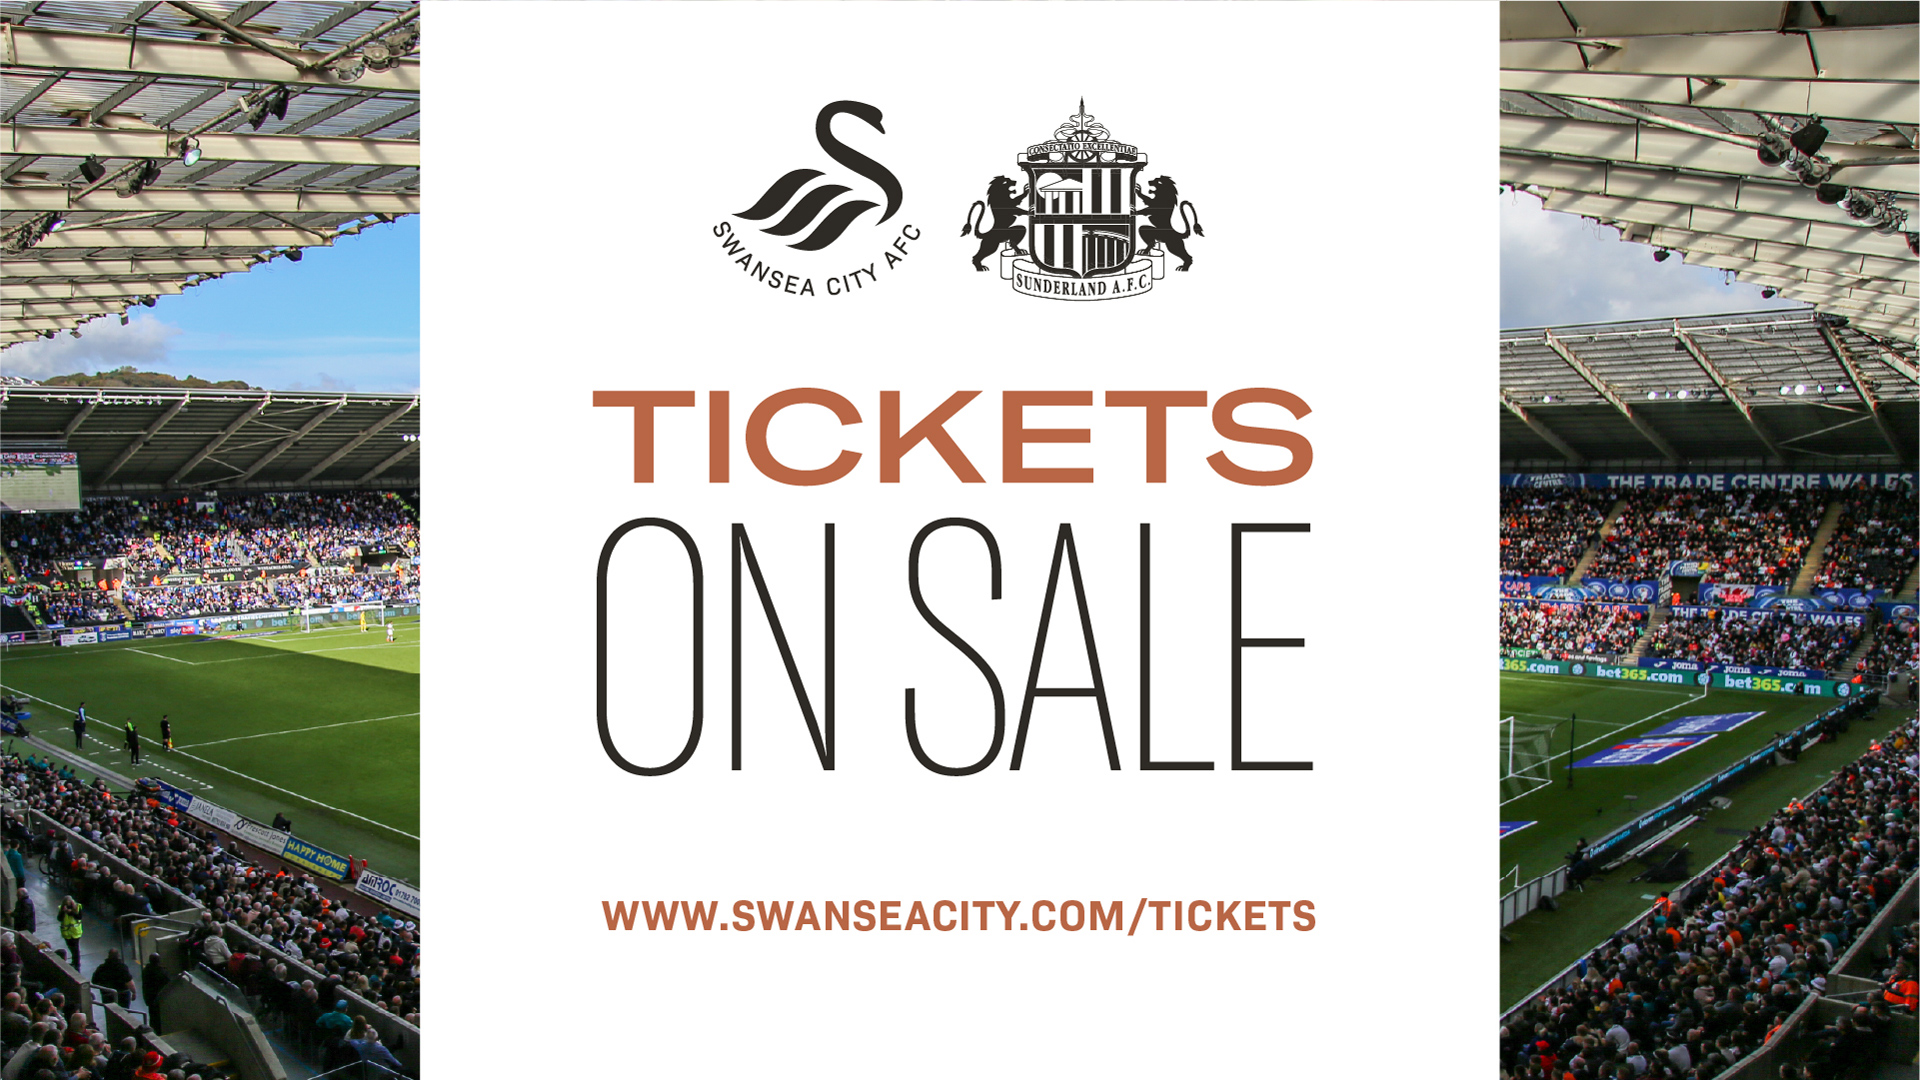 Sunderland ticket artwork